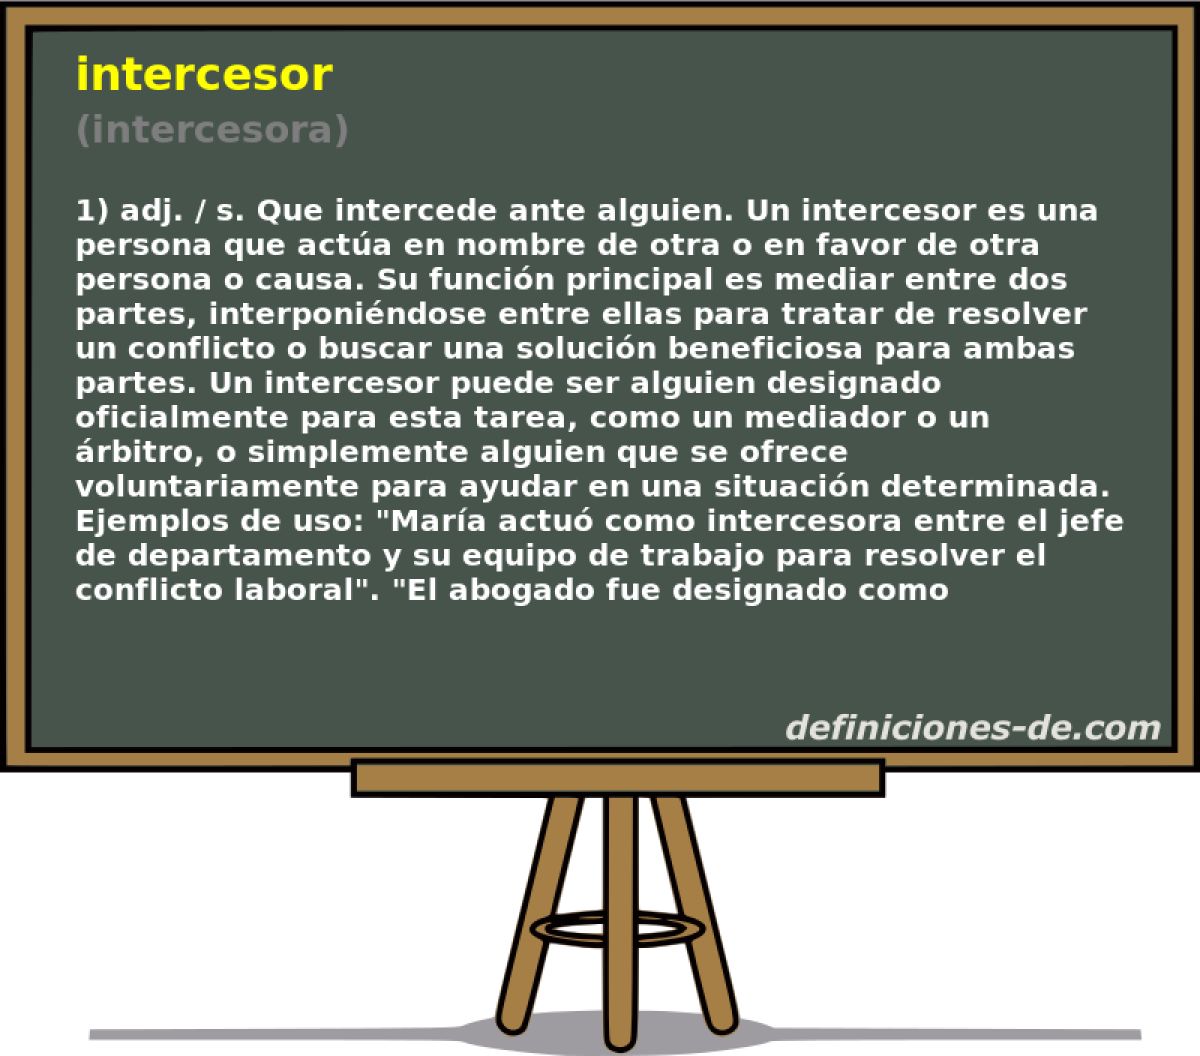 intercesor (intercesora)